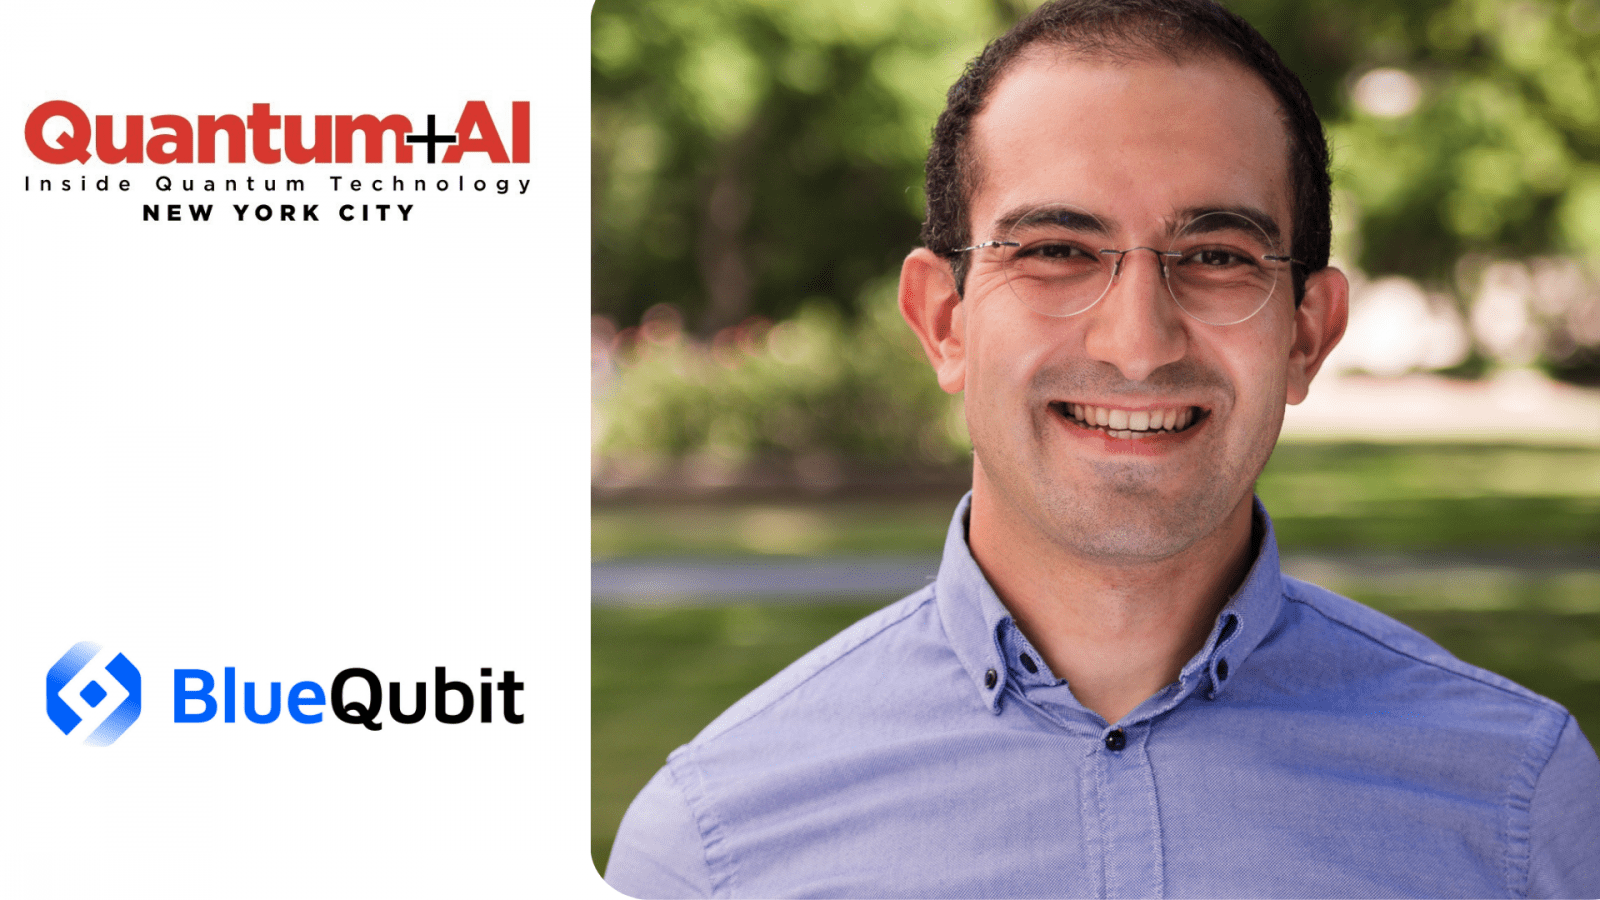 هرانت قریبیان، مدیرعامل و یکی از بنیانگذاران BlueQubit، سخنران سال 2024 برای کنفرانس IQT Quantum + AI - Inside Quantum Technology است.